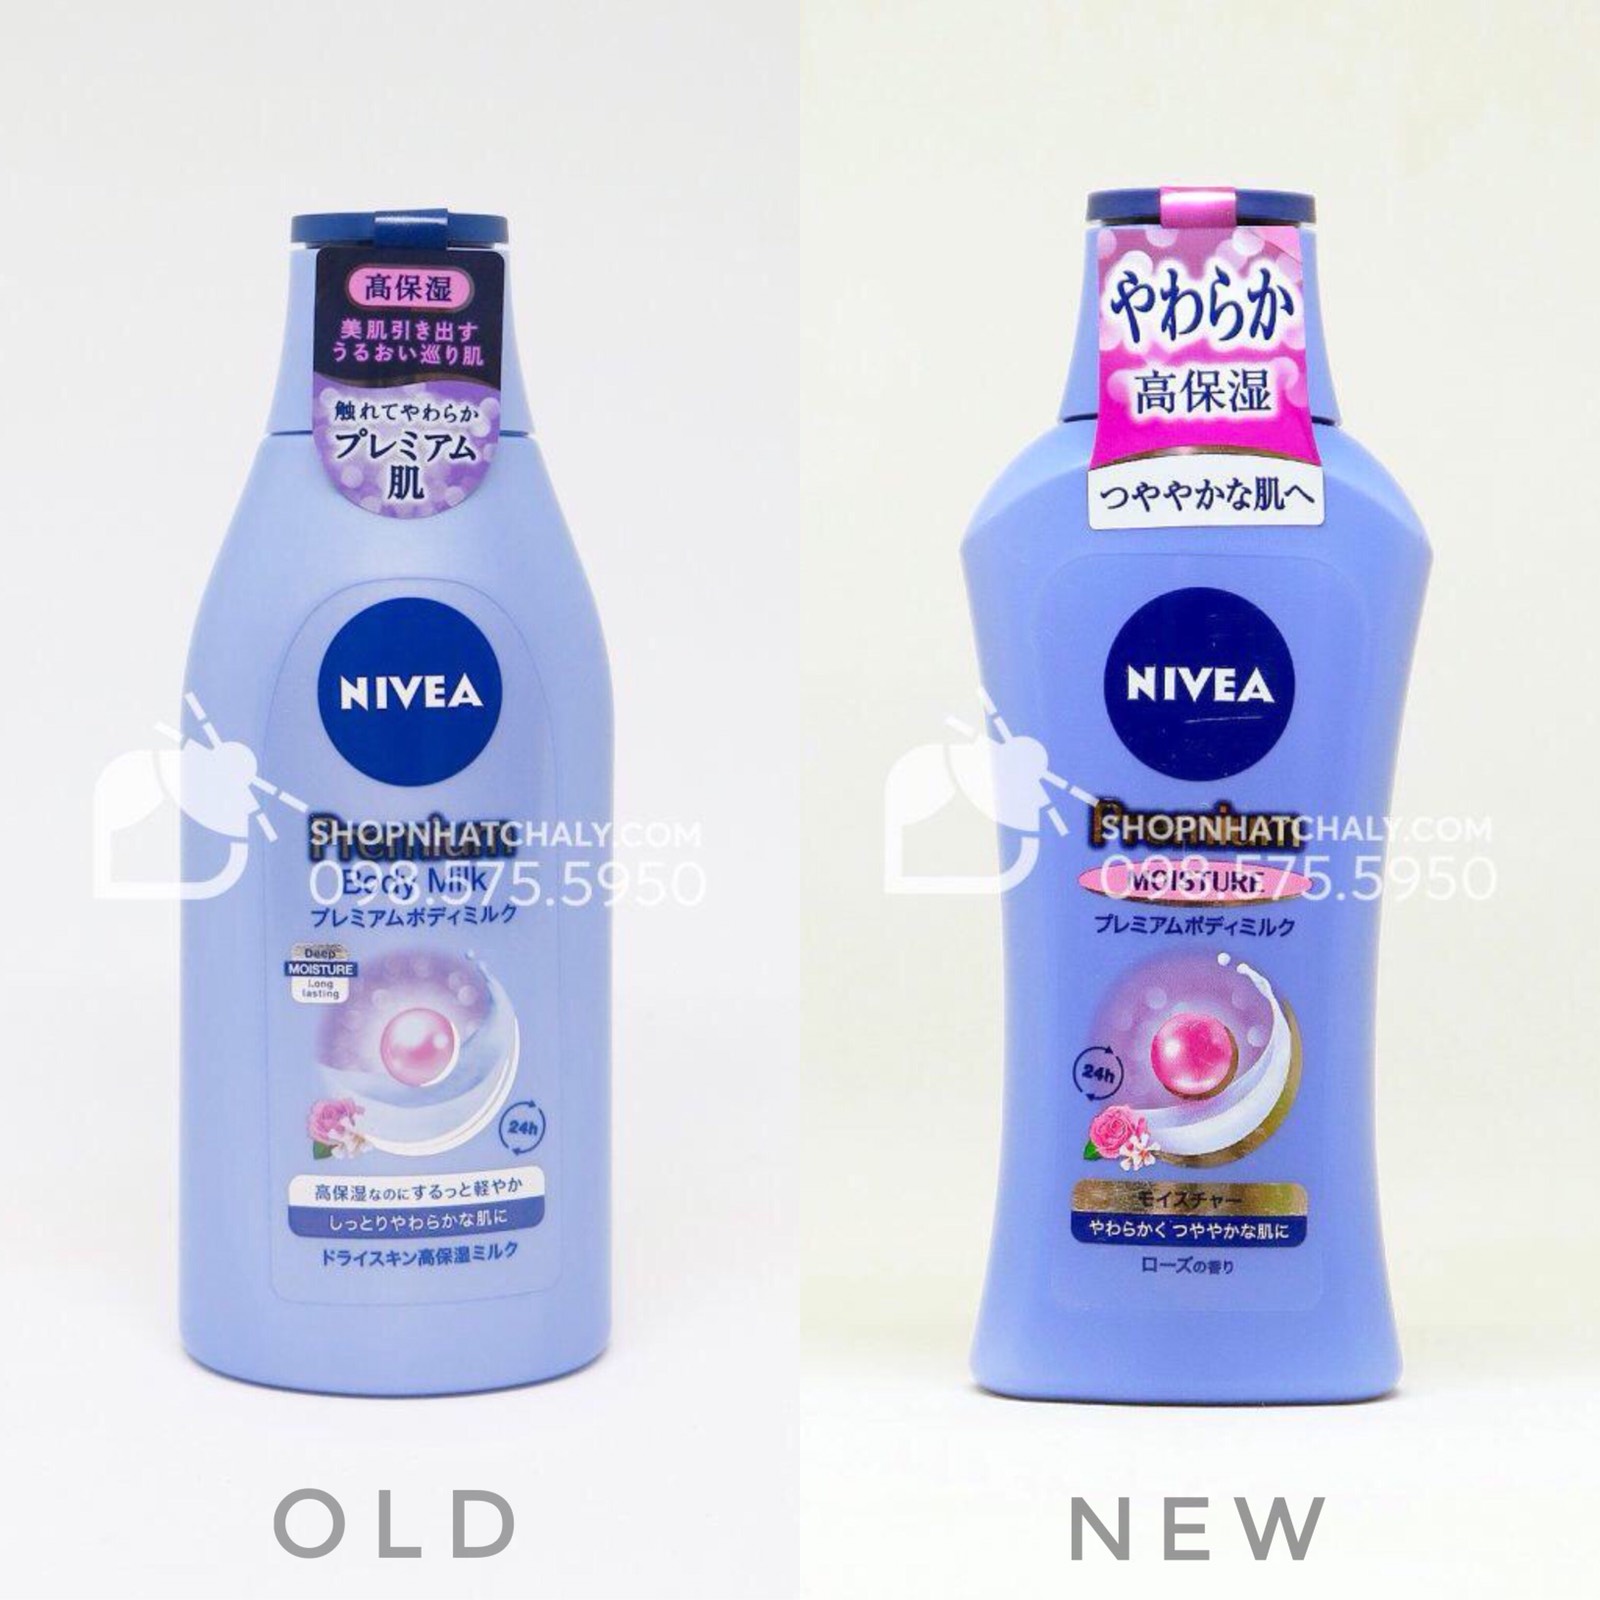 Mẫu cũ (trái) và mẫu mới vừa cập nhật (phải) của sữa dưỡng thể Nivea premium body milk moisture cấp ẩm cho da khô